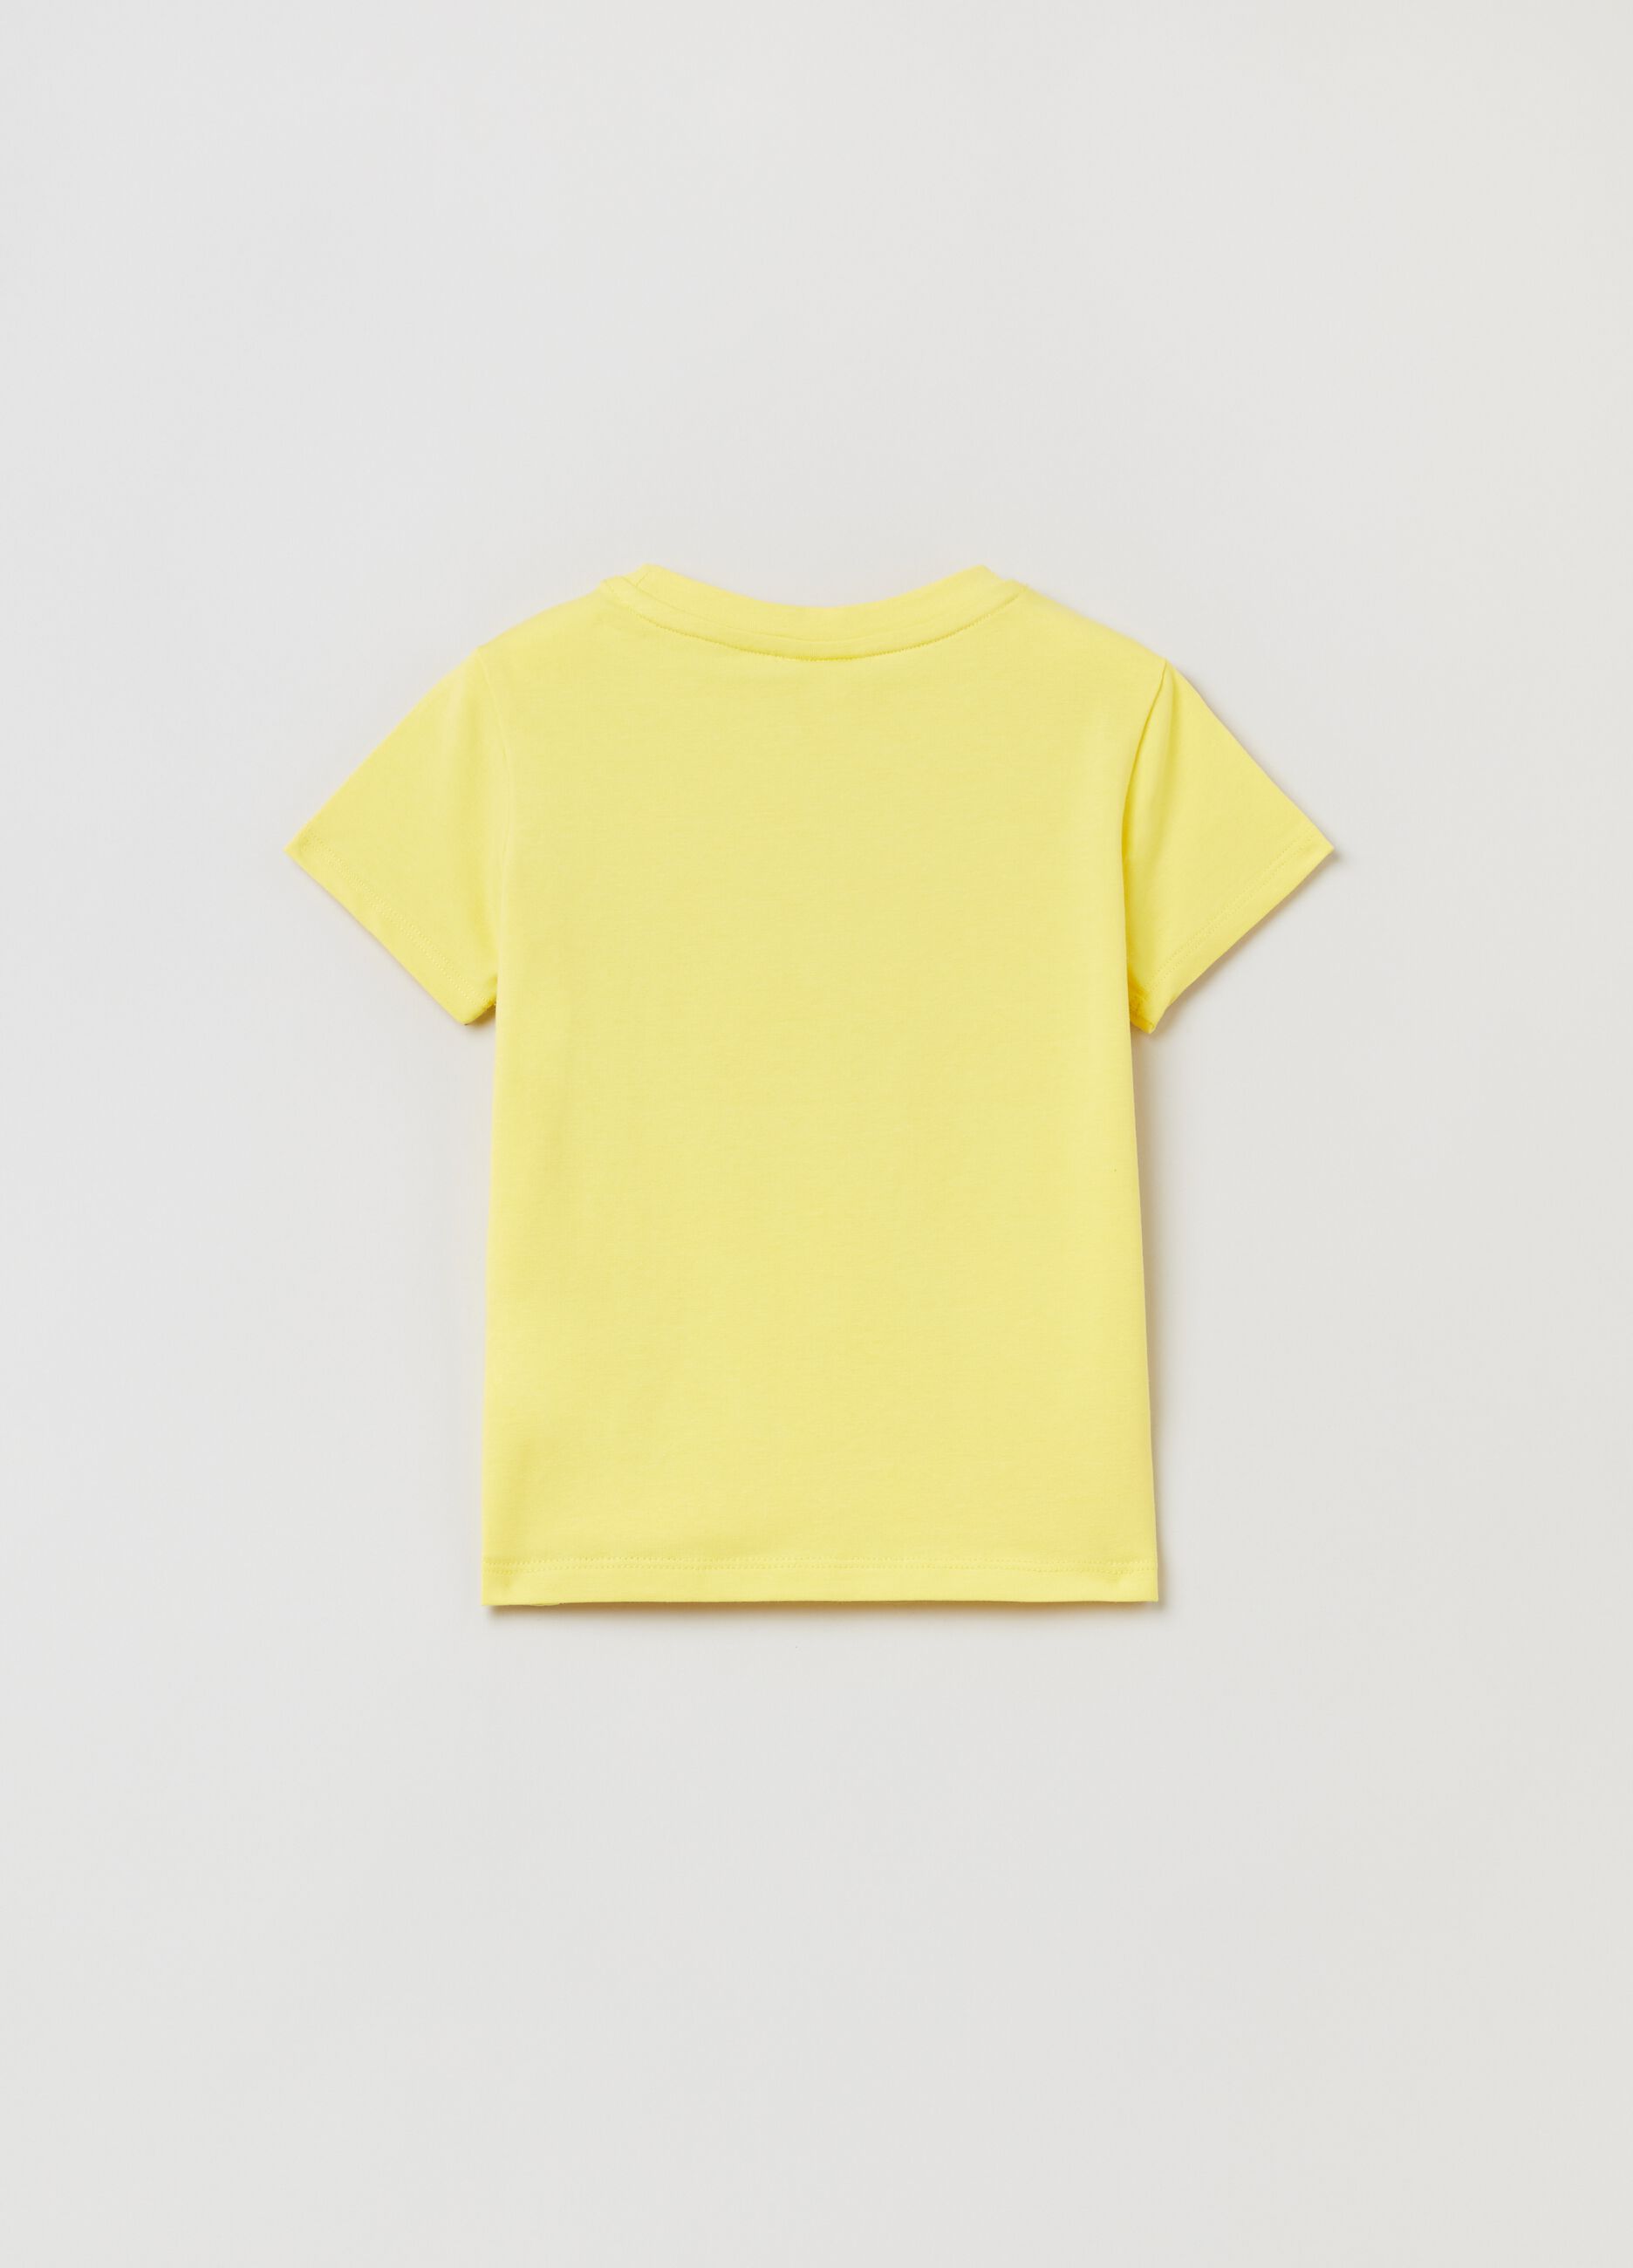 Stretch cotton T-shirt with Tweetie Pie print